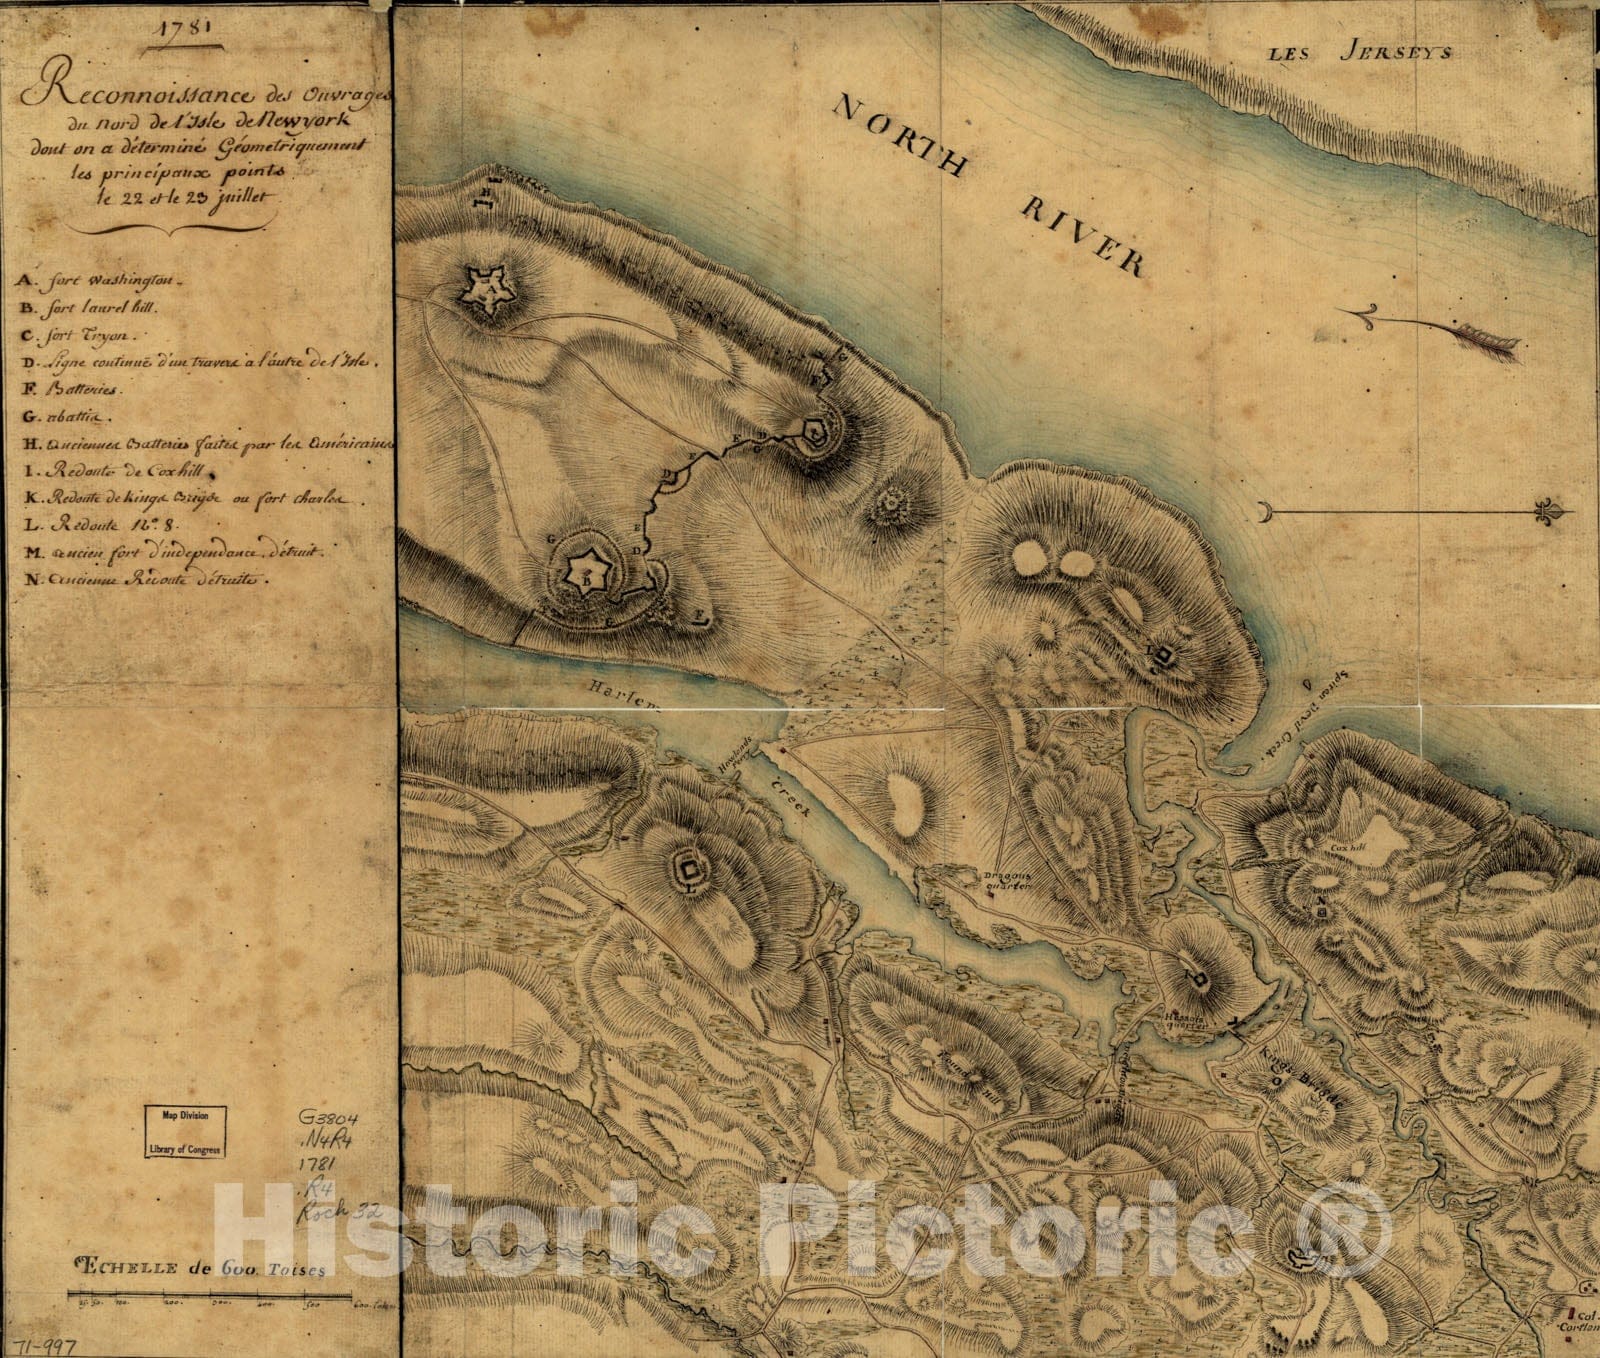 Historical Map, 1781 Reconnoissance des ouvrages du nord de l'Isle de Newyork Dont on a Determine geometriquement les principaux Points le 22 et le 23 juillet, Vintage Wall Art